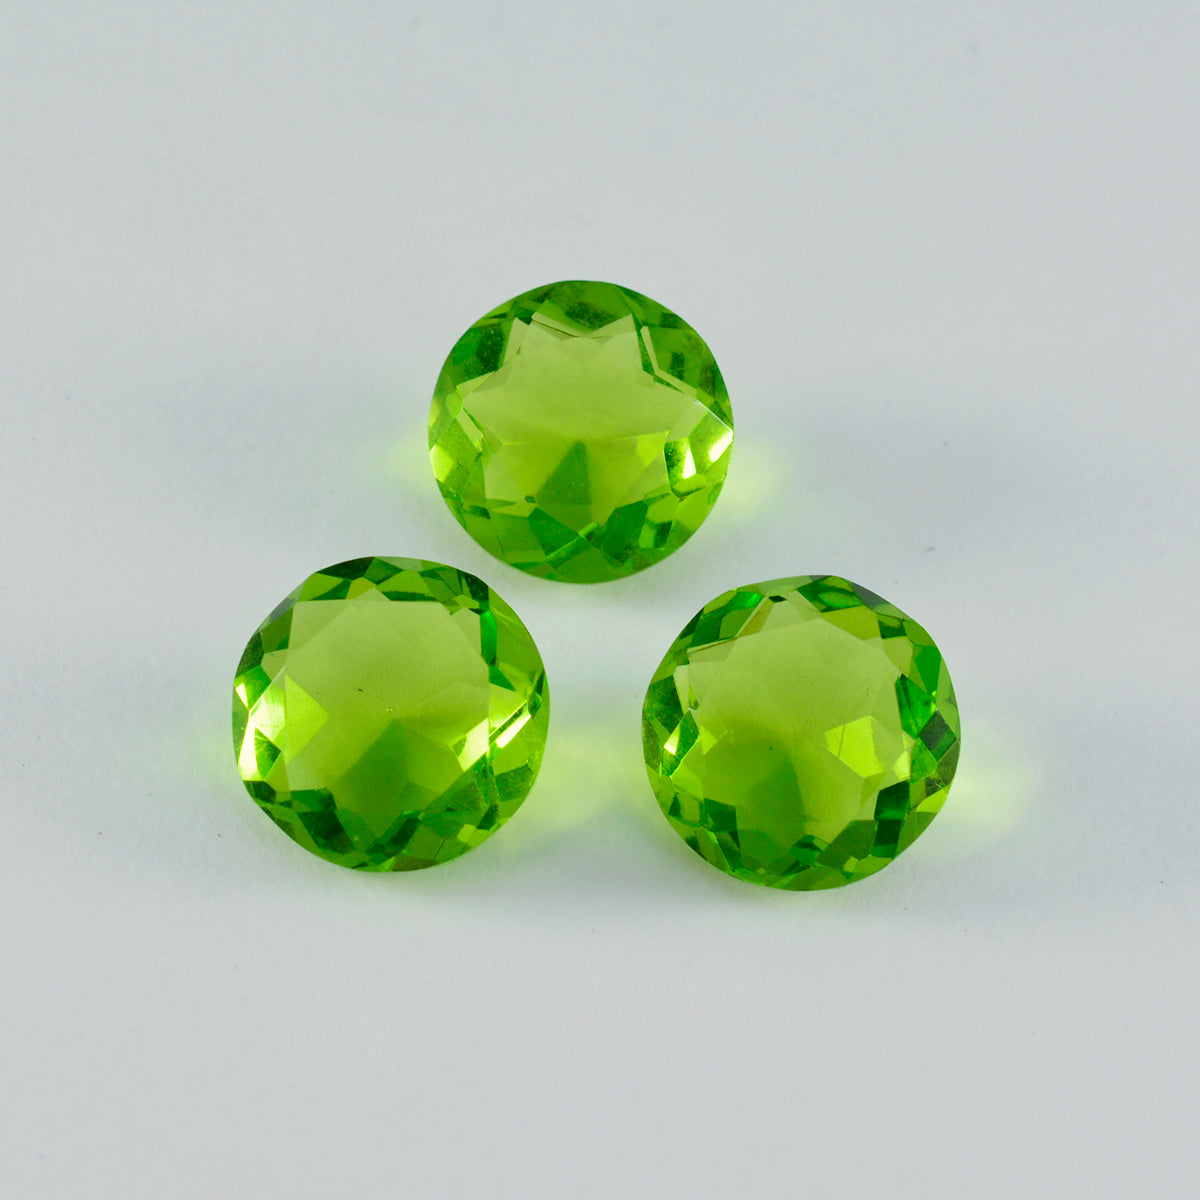 Riyogems 1 pieza de peridoto verde cz facetado 12x12 mm forma redonda hermosa calidad piedra preciosa suelta